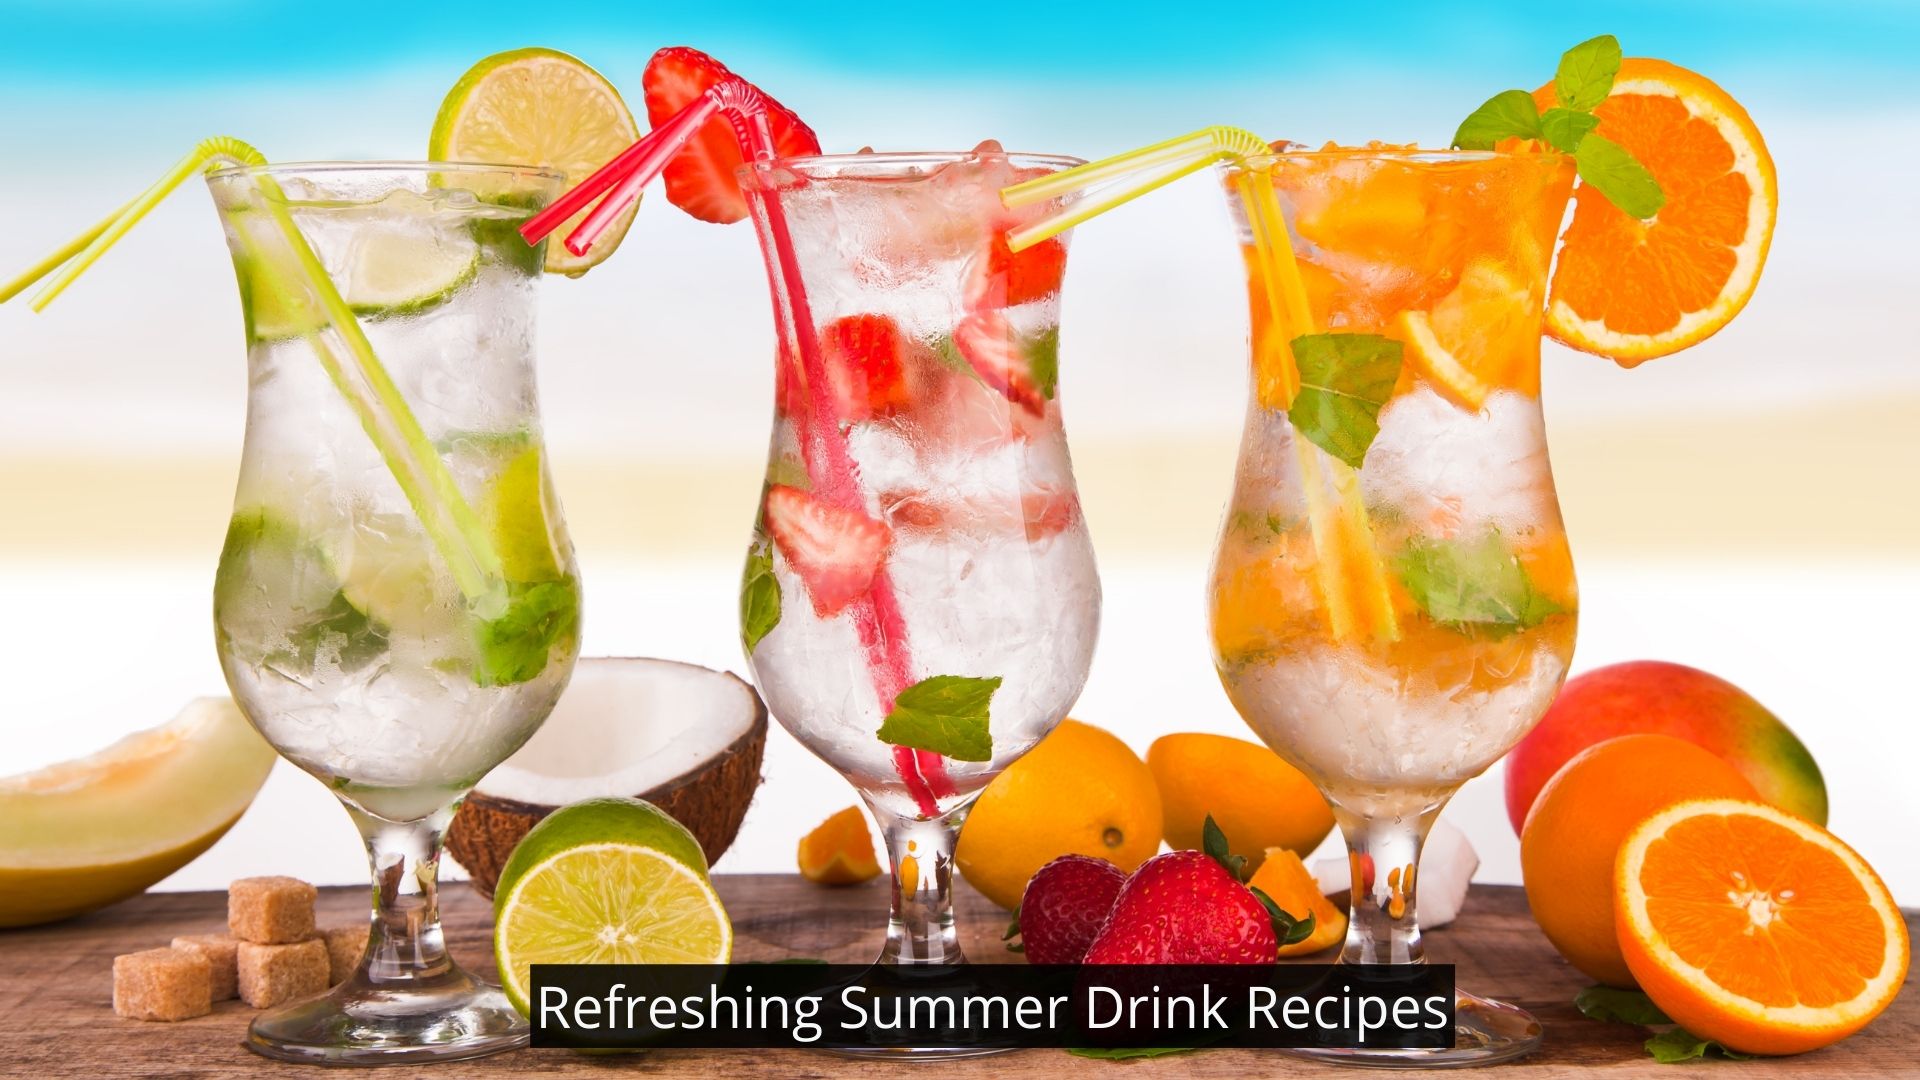 Refreshing summer drinks recipes